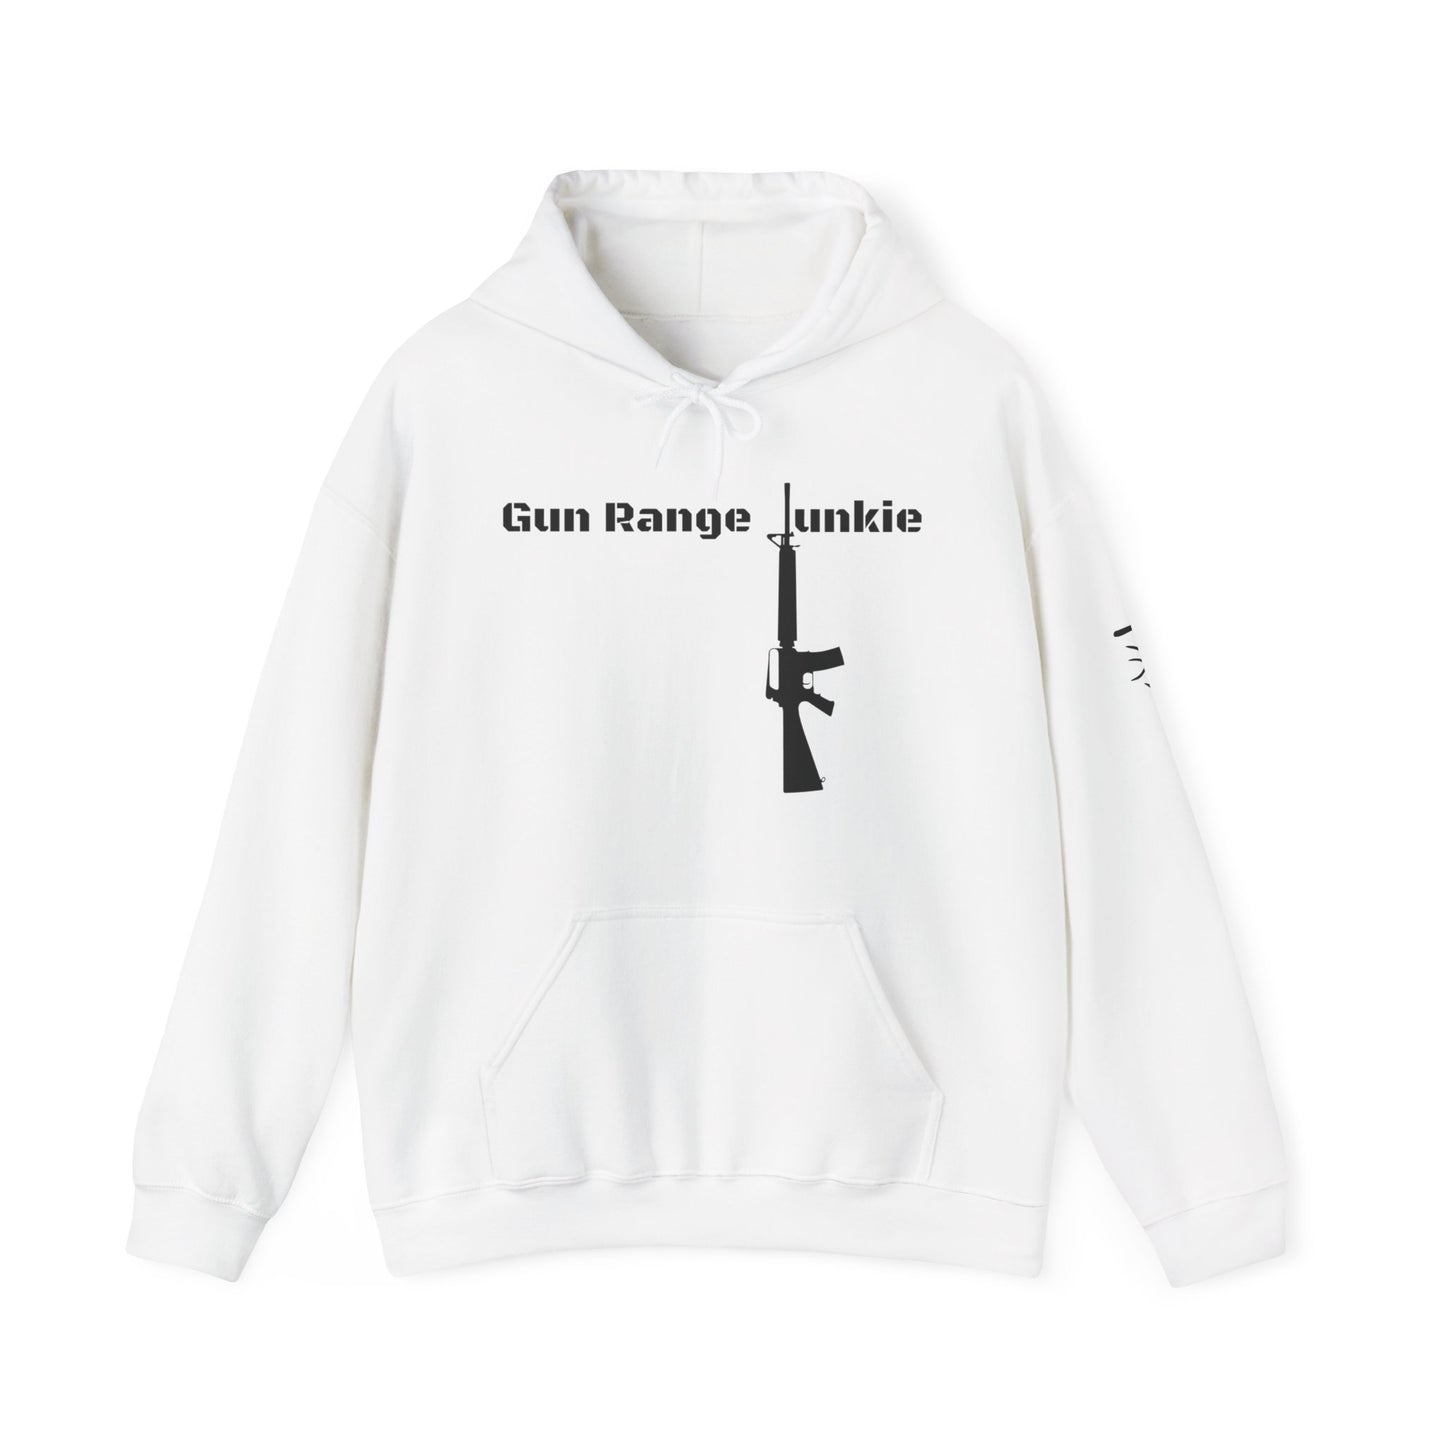 Gun Range Junkie Hooded Sweatshirt